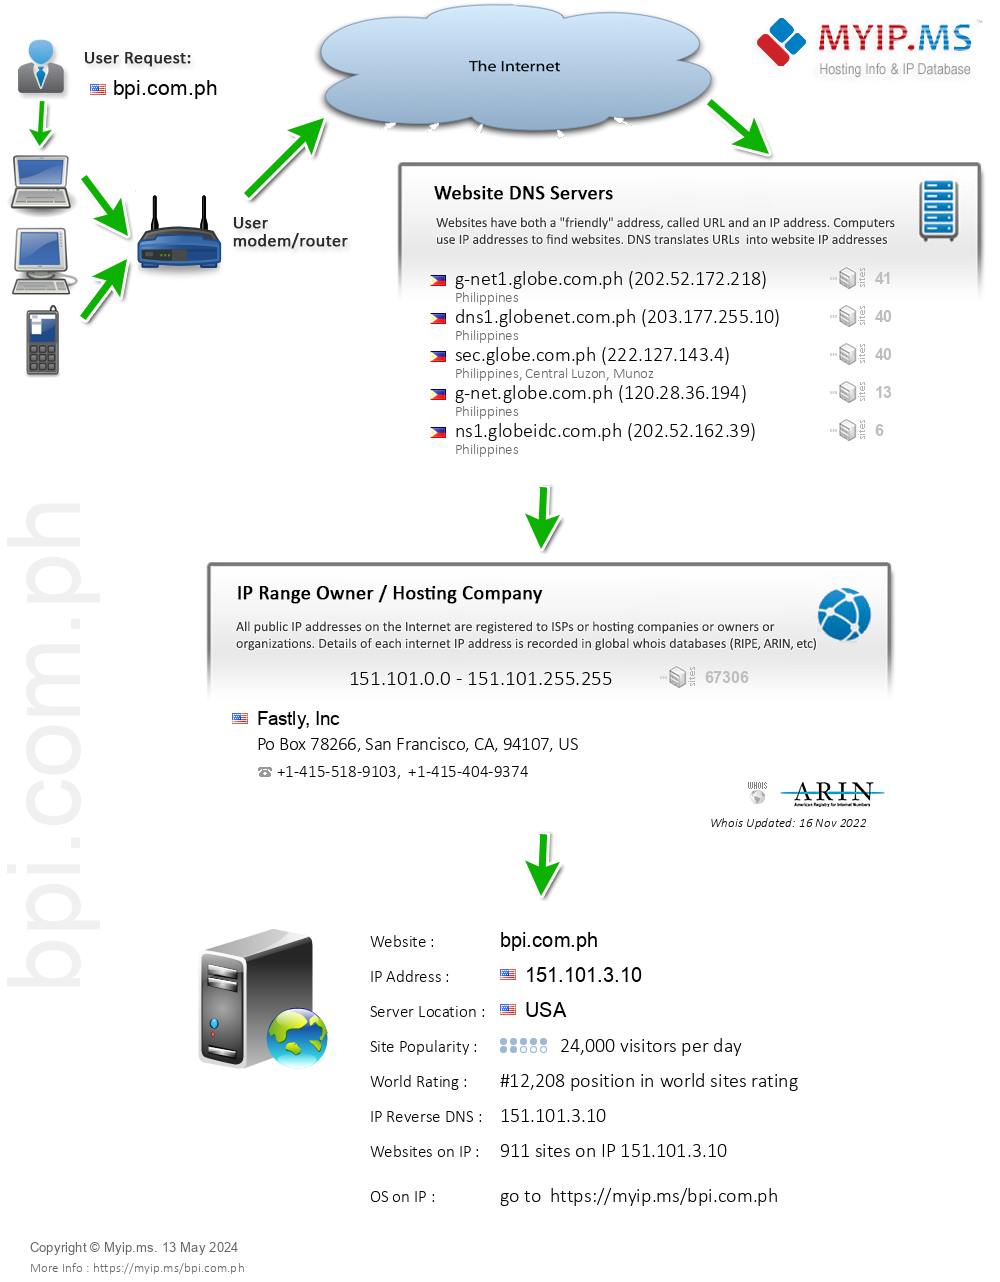 Bpi.com.ph - Website Hosting Visual IP Diagram